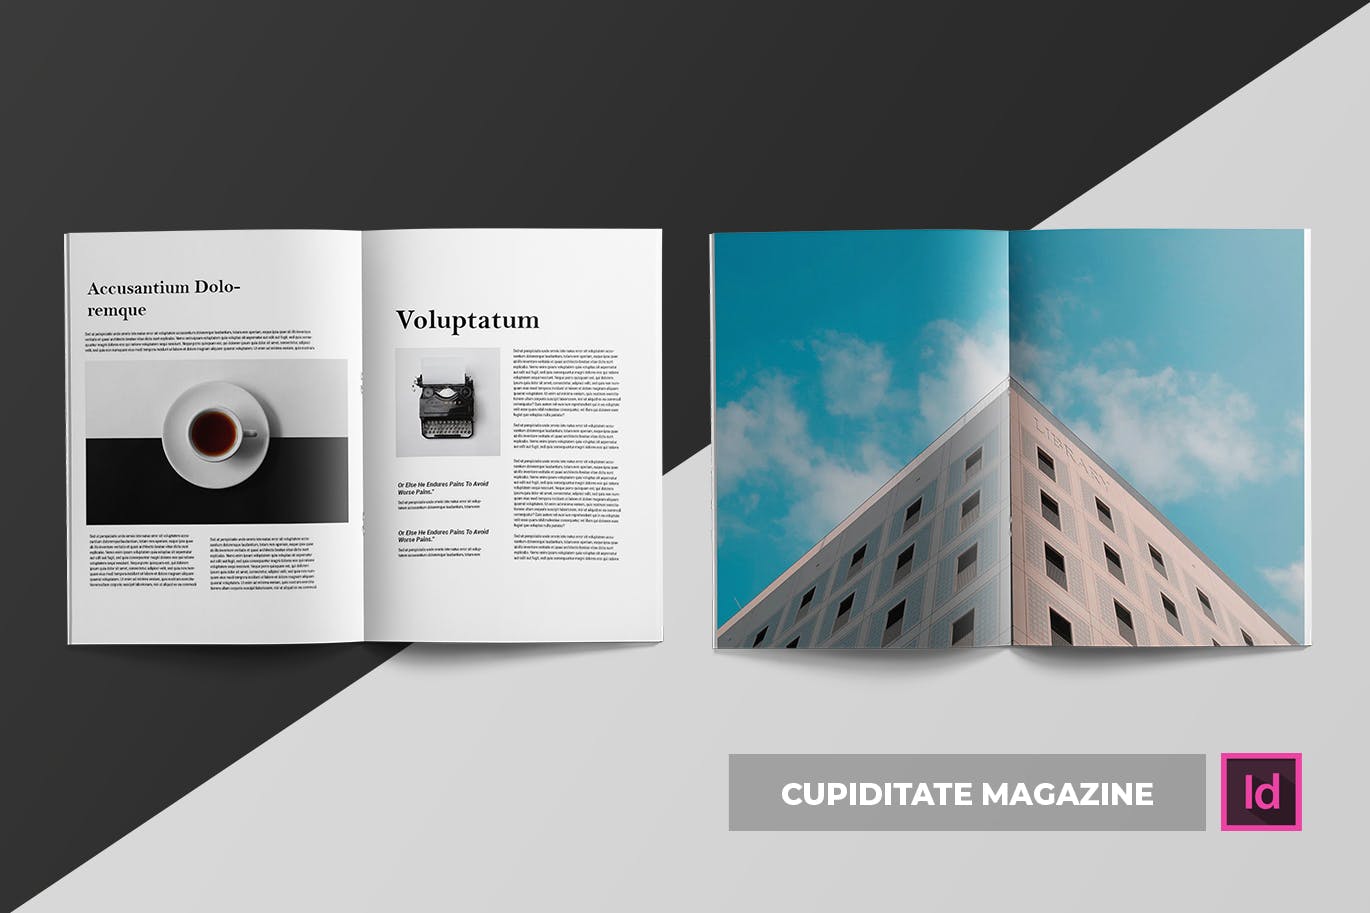 建筑/摄影/设计主题杂志设计模板 Cupiditate | Magazine插图(5)